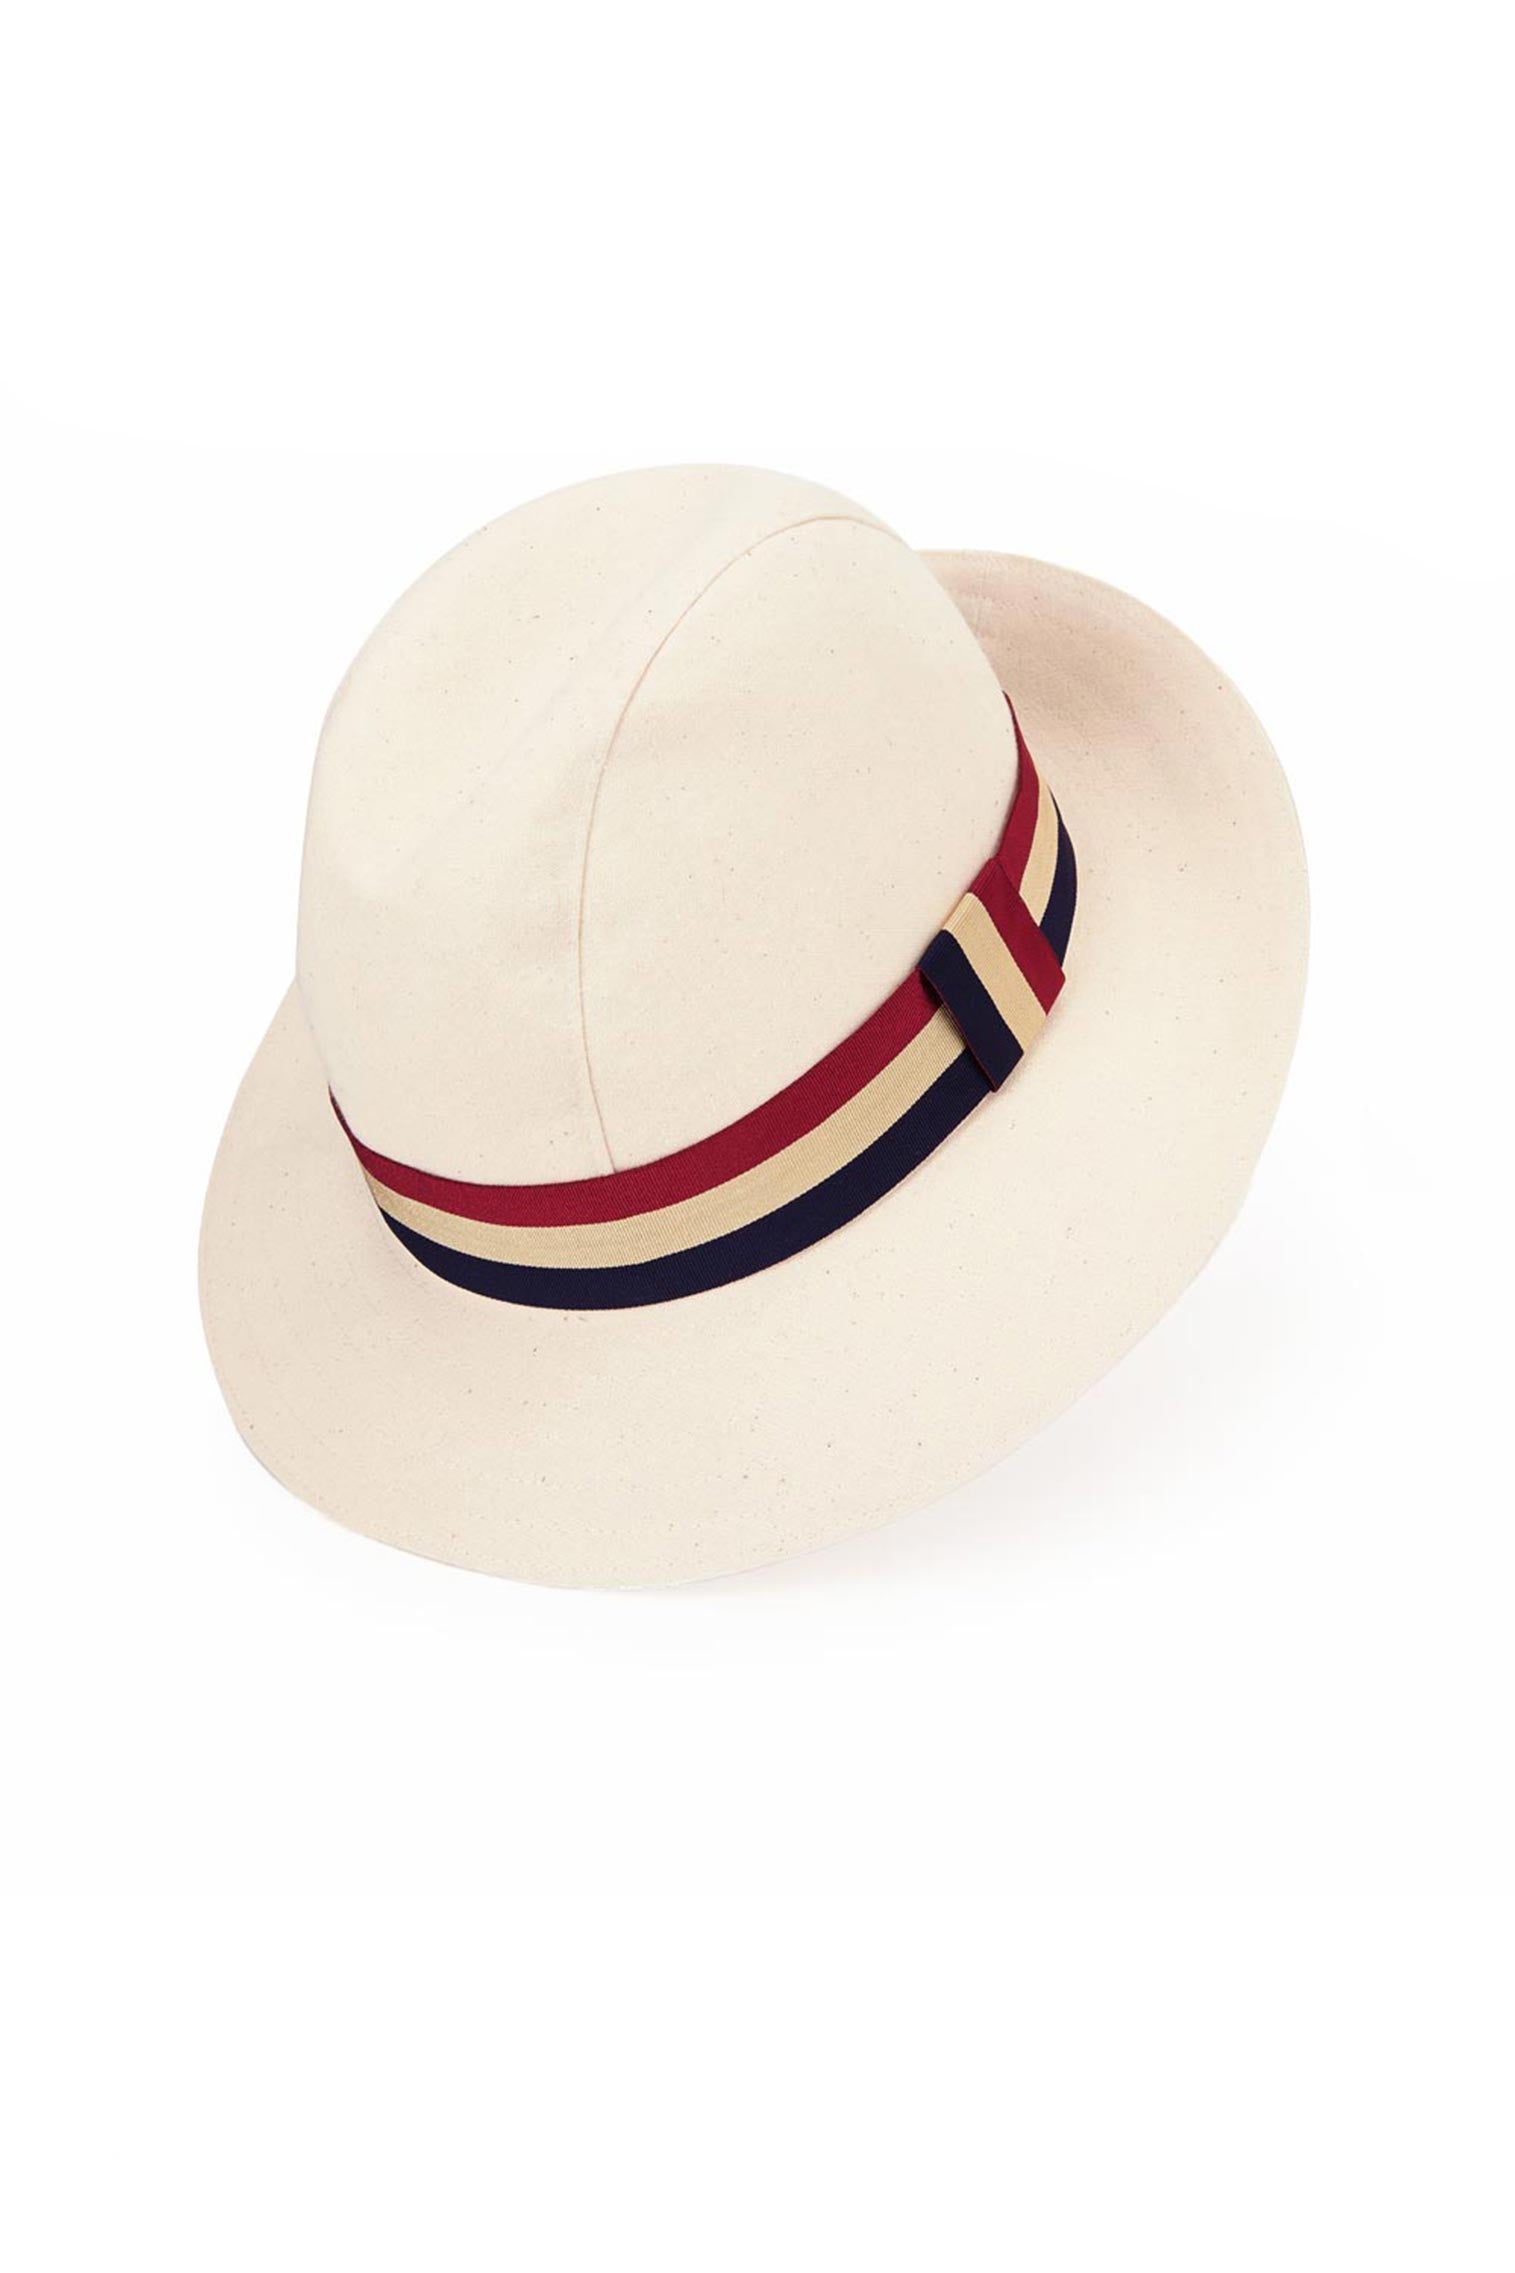 Monaco Hat - All Ready to Wear - Lock & Co. Hatters London UK